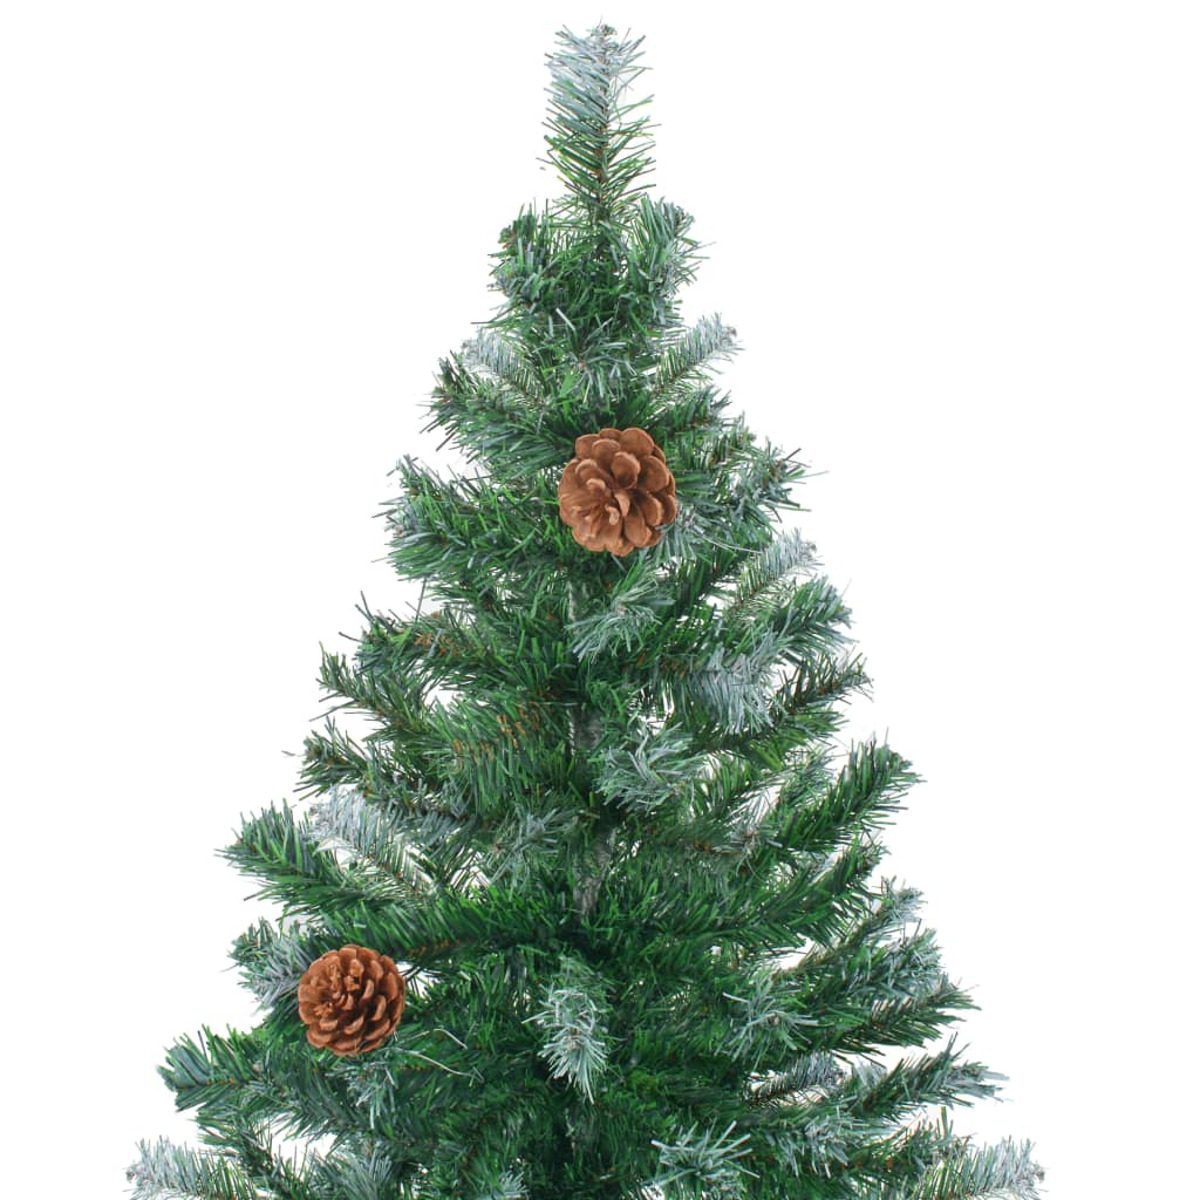 VIDAXL 3077701 Weihnachtsbaum